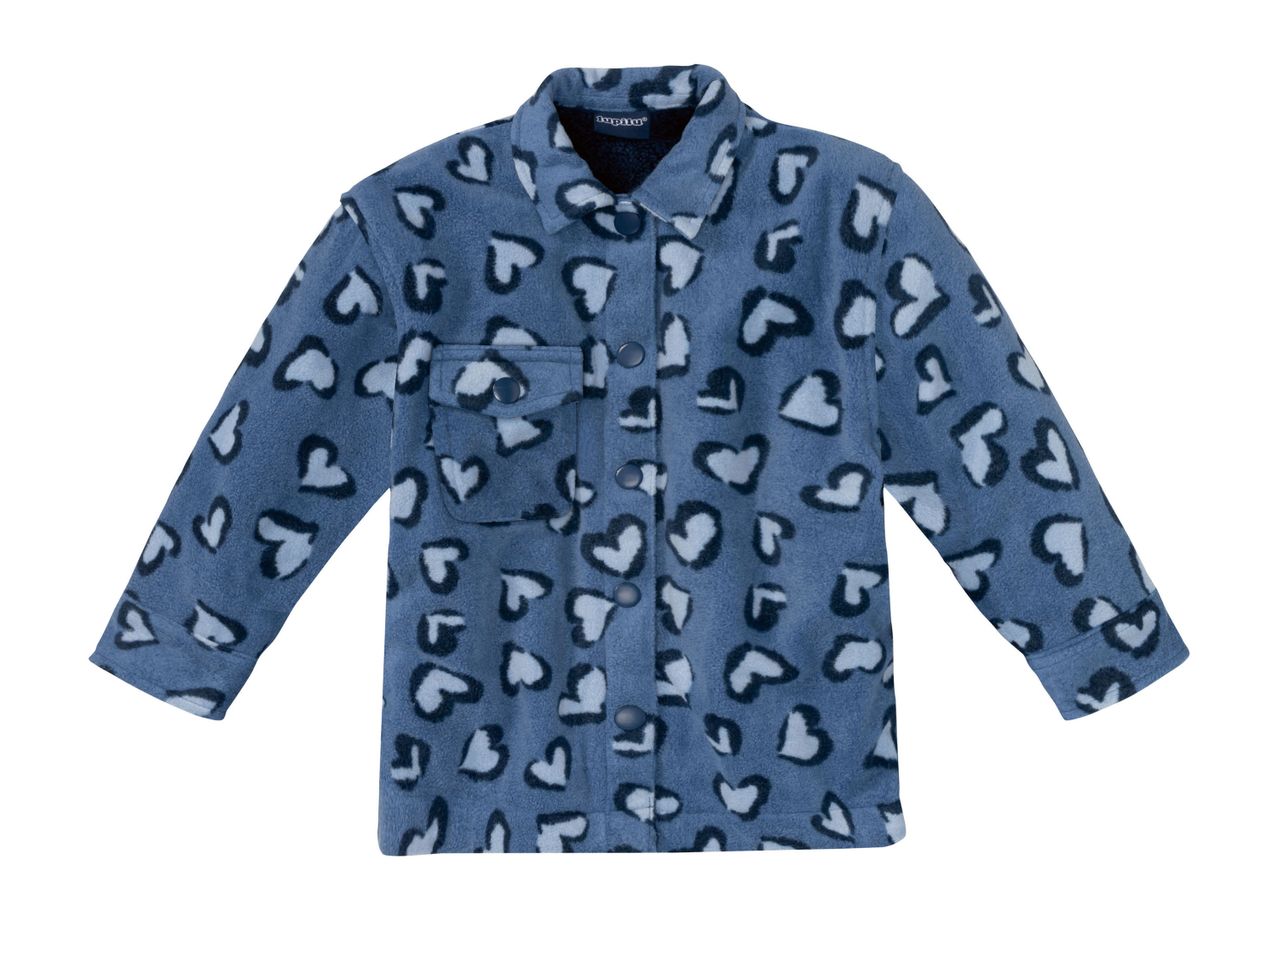 Maxi camicia da bambina , prezzo 9.99 EUR 
Maxi camicia da bambina Coupon - Misure: ...